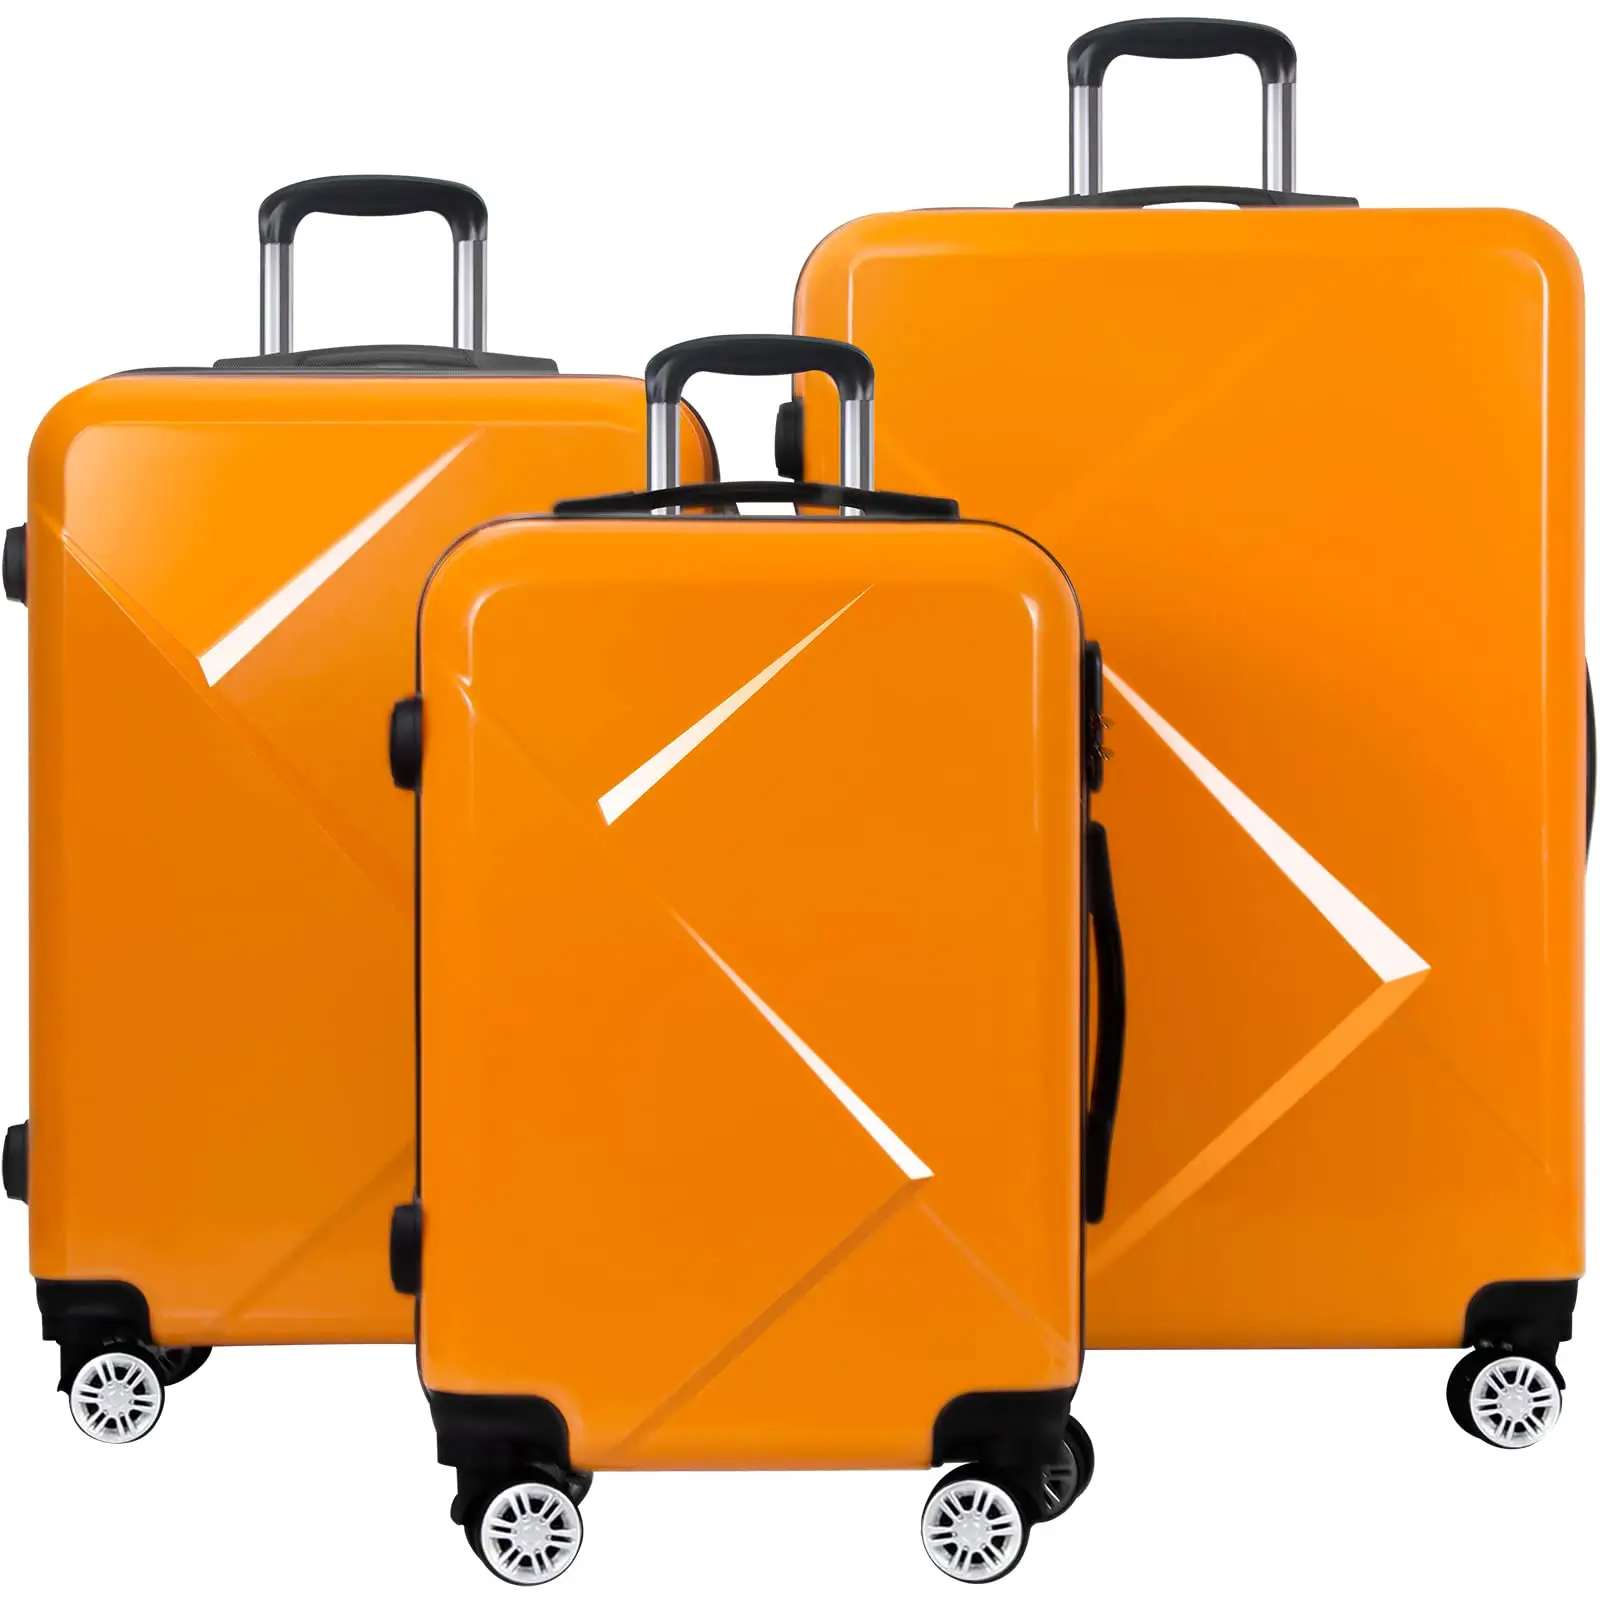 Bagaglio da viaggio ABS + PC Carry on Trolley borse saling a caldo resistente impermeabile donna valigia uomo Spinner ruote set bagagli